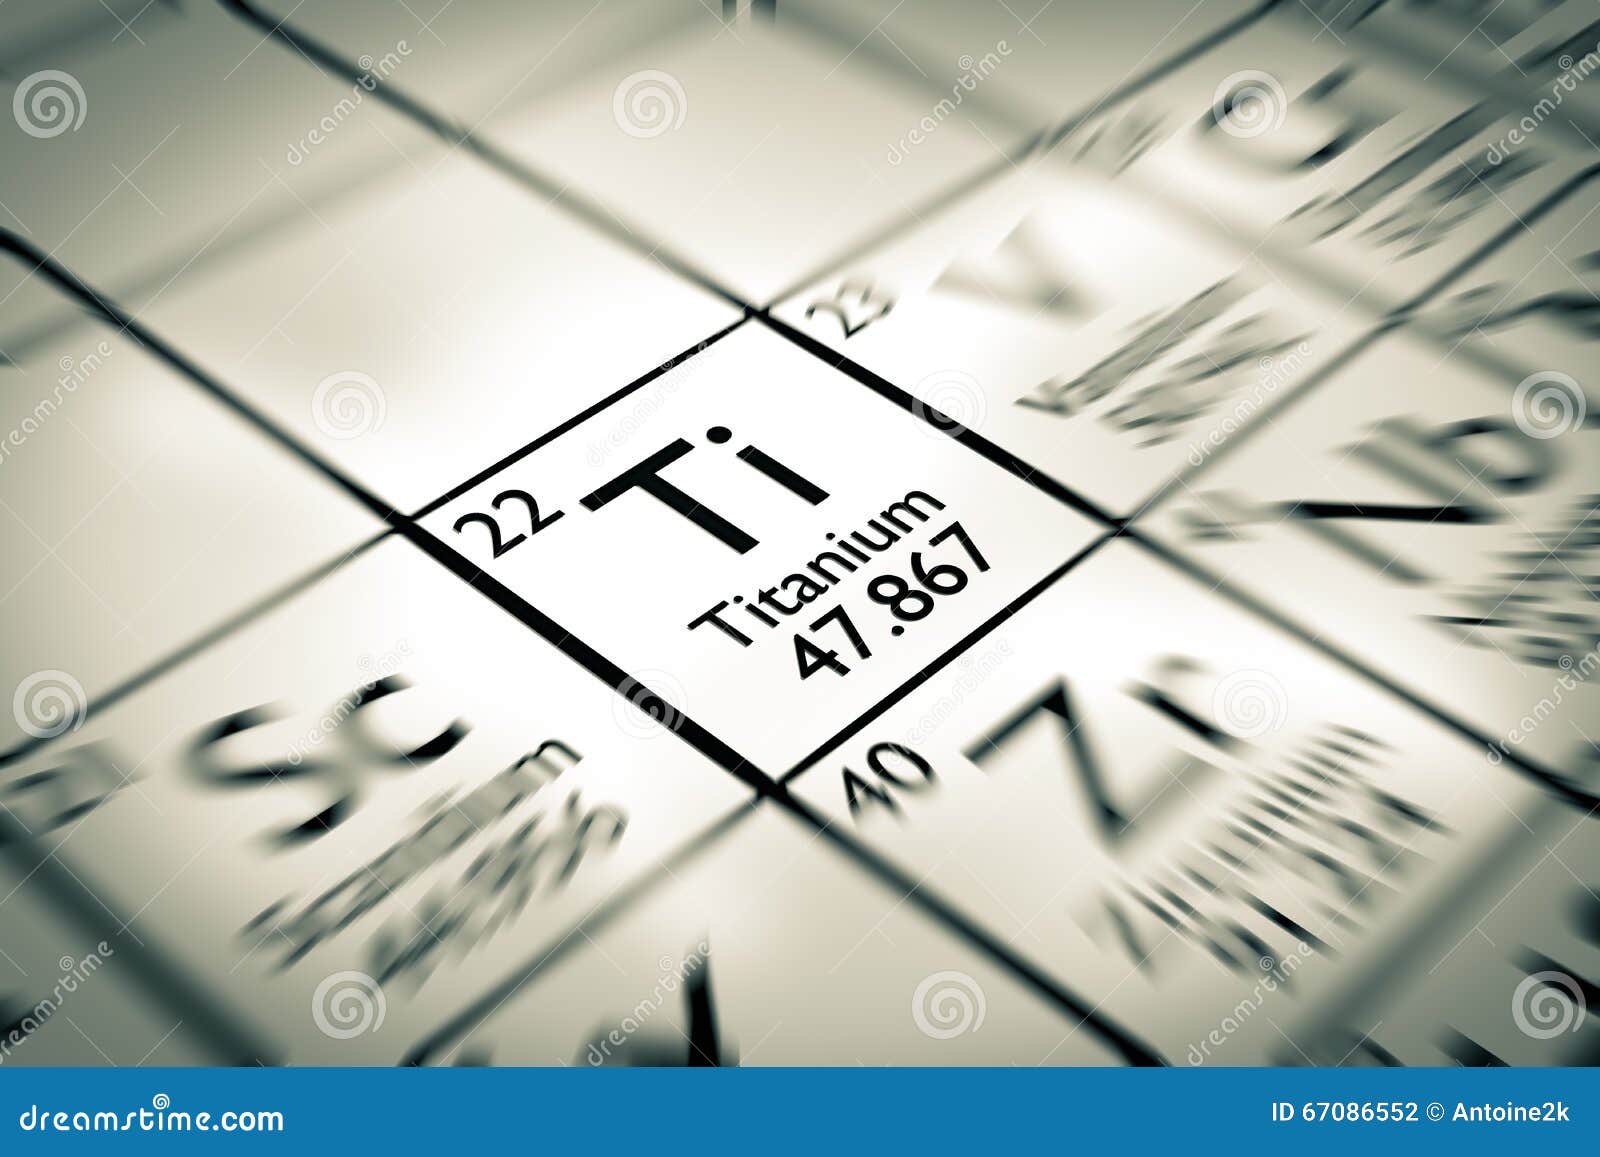 focus on titanium chemical 